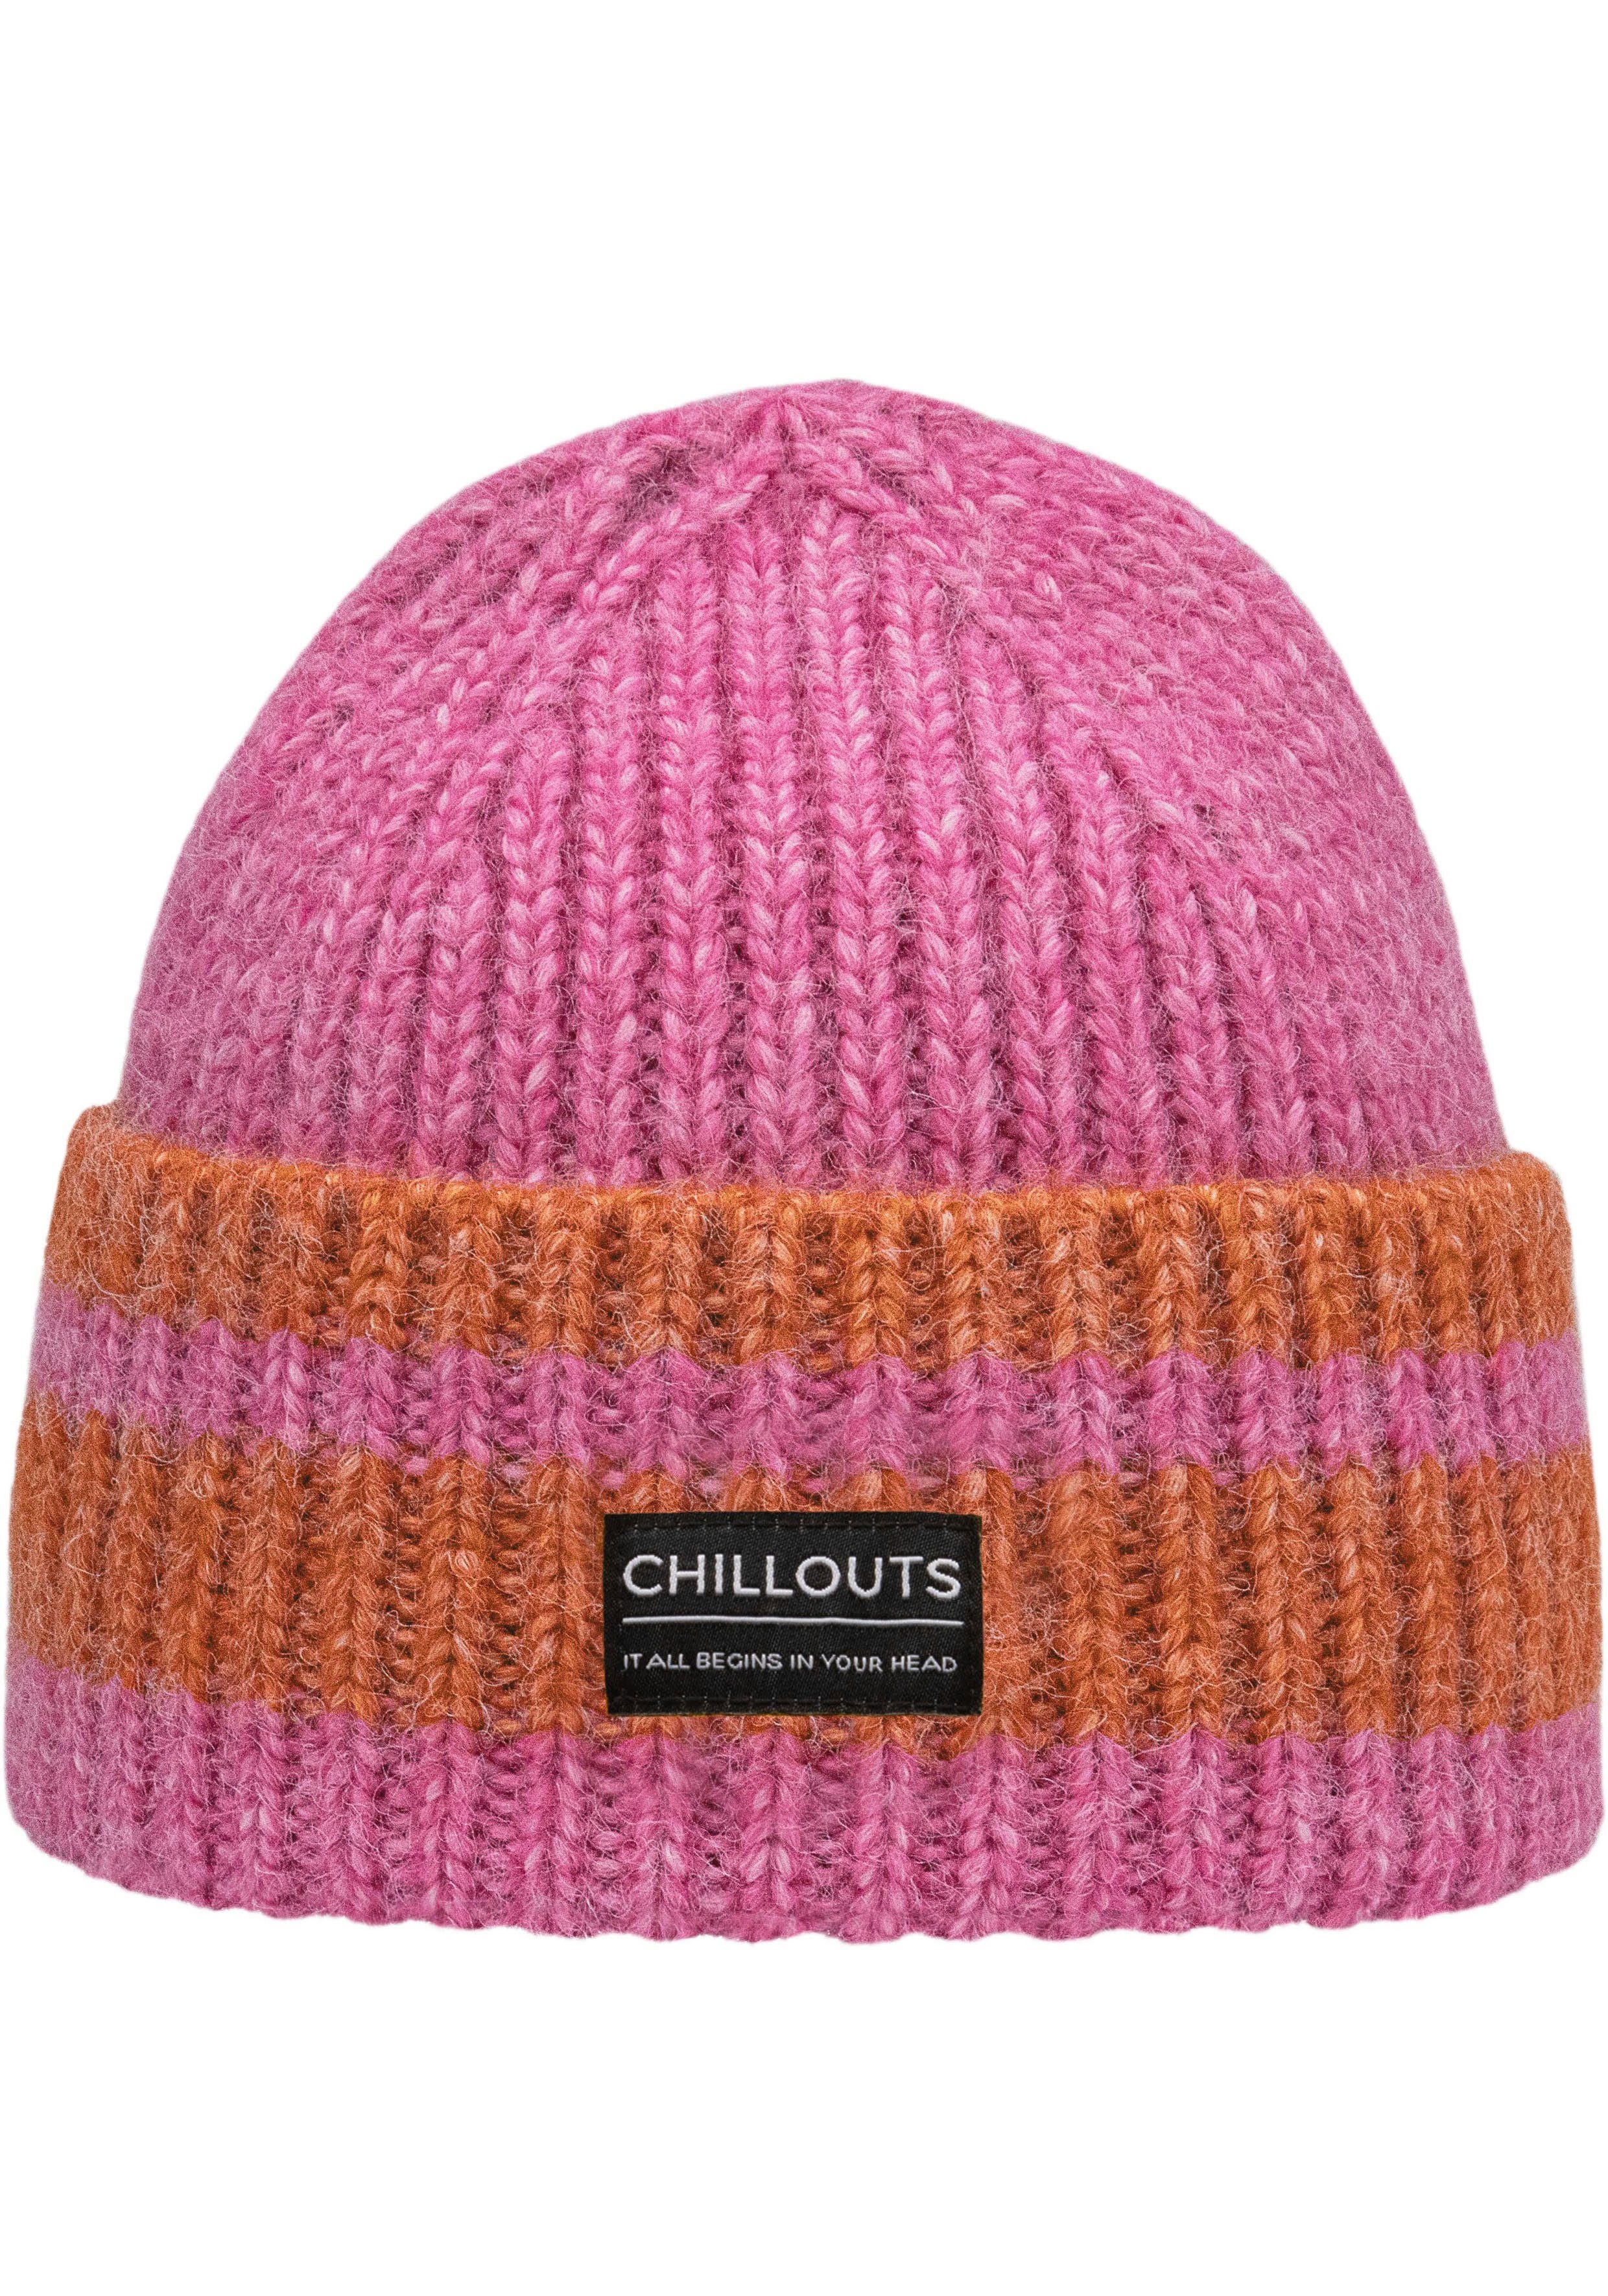 chillouts Strickmütze Cooper Hat mit Kontrast-Streifen pink-orange | Strickmützen